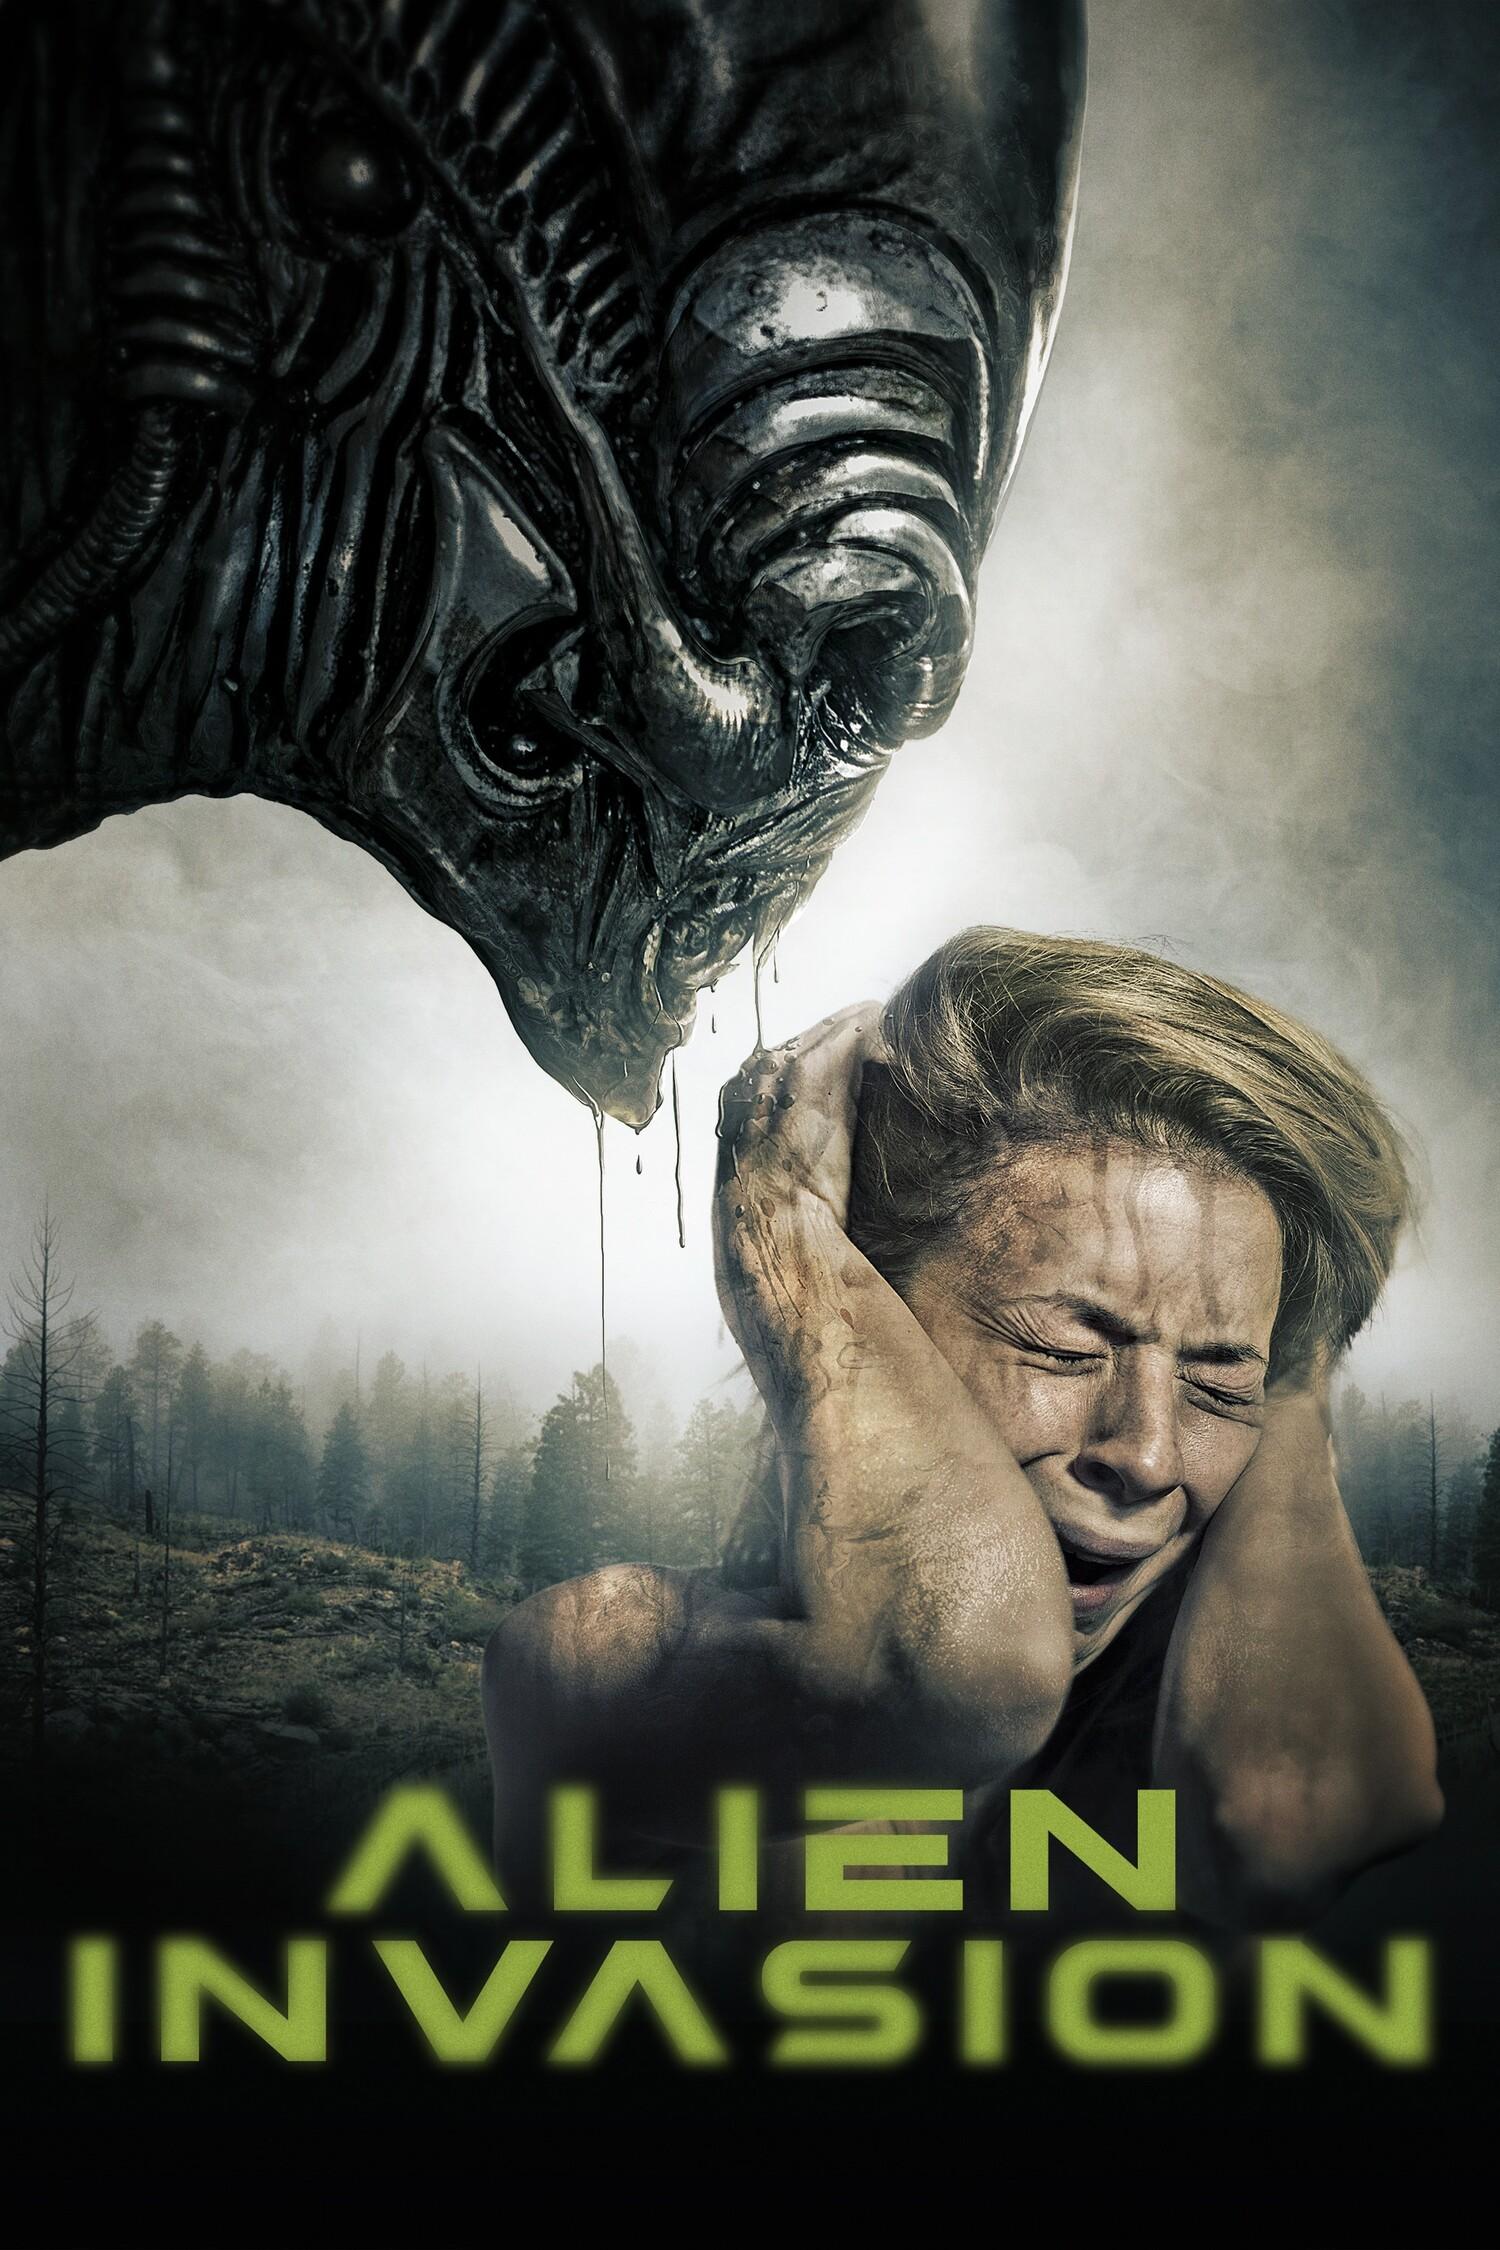 Постер фильма Чужой. Вторжение | Alien Invasion